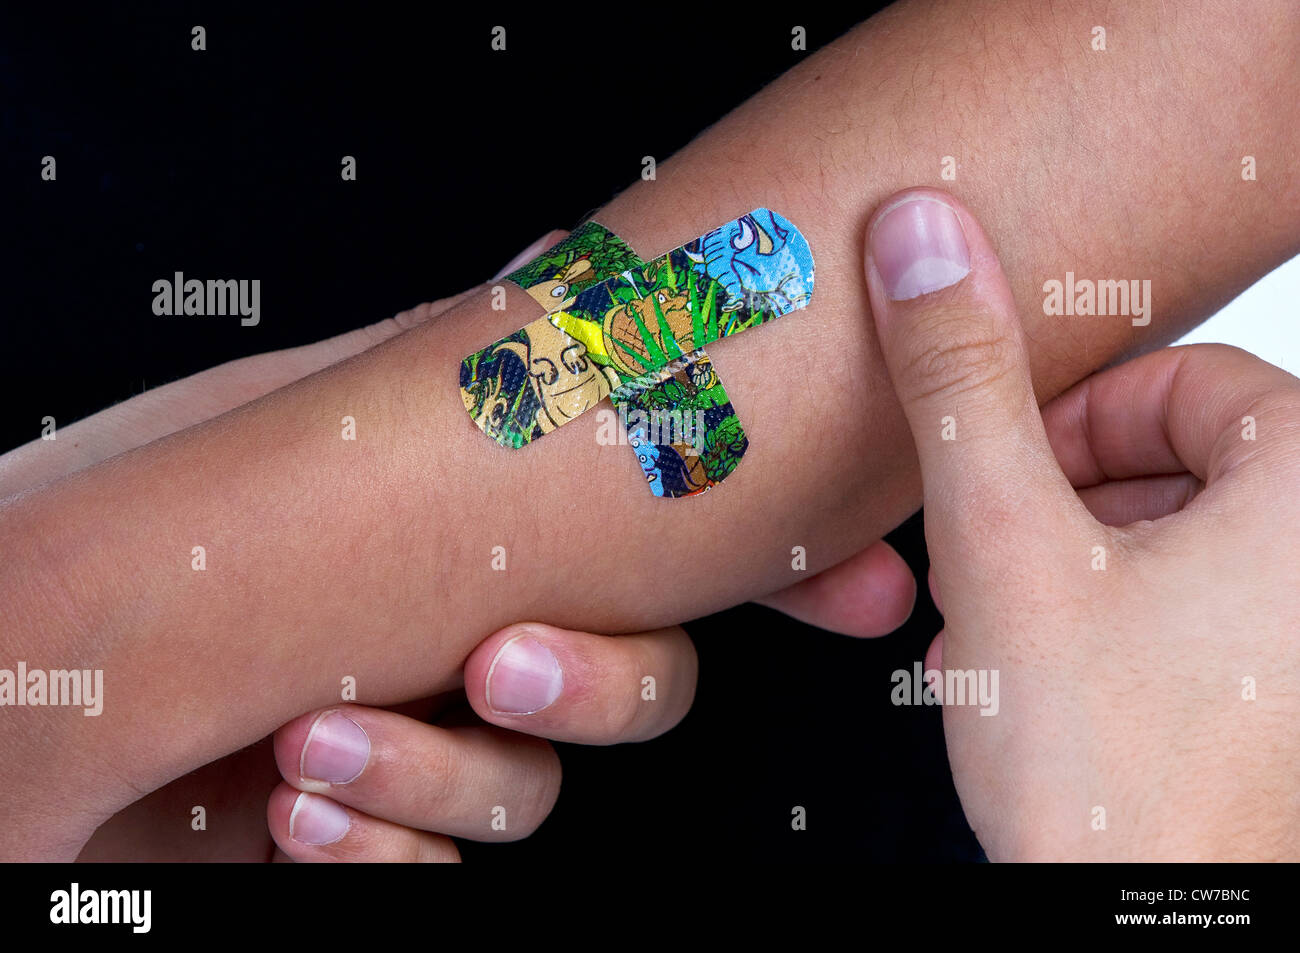 Sparadraps colorés sont collée sur un bras de l'enfant, Allemagne Banque D'Images